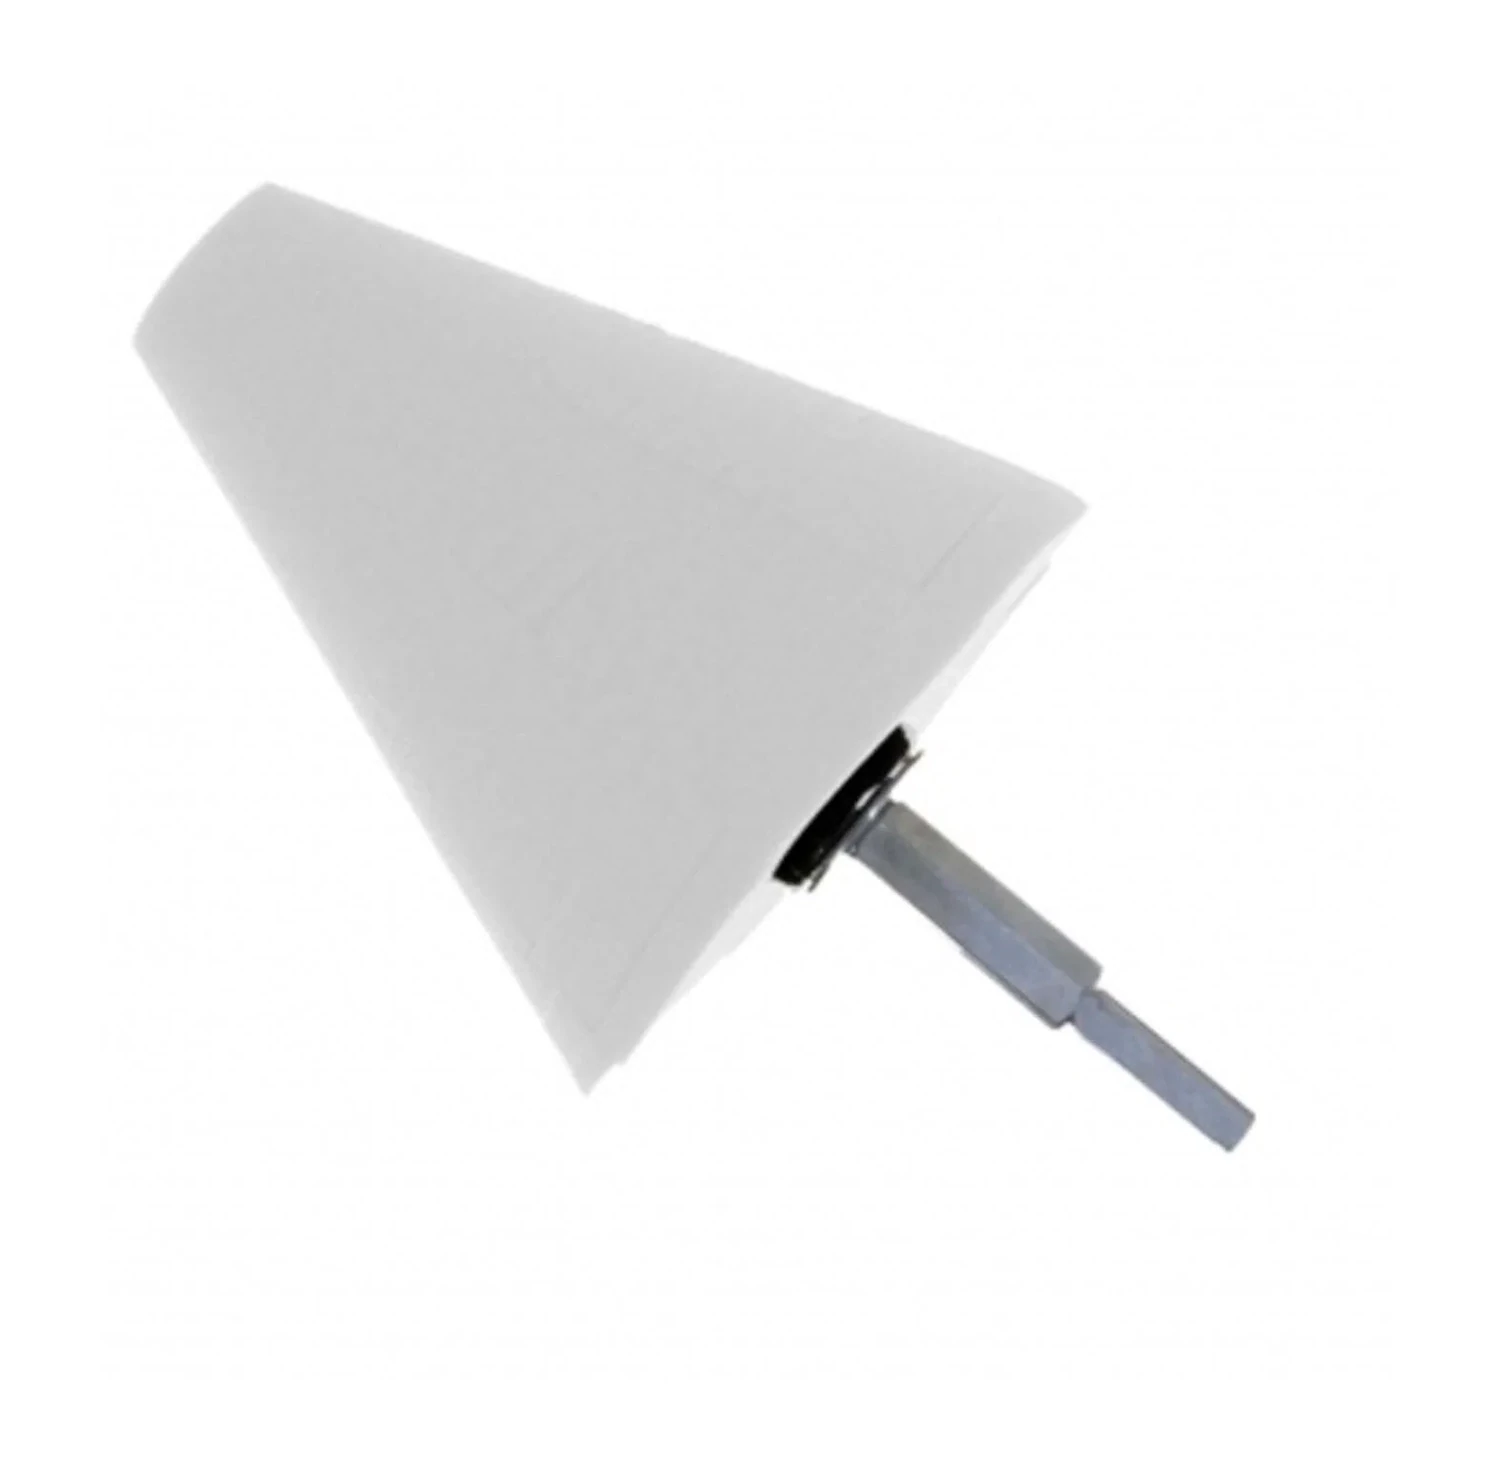 Polijst cone wit medium light cut 10cm